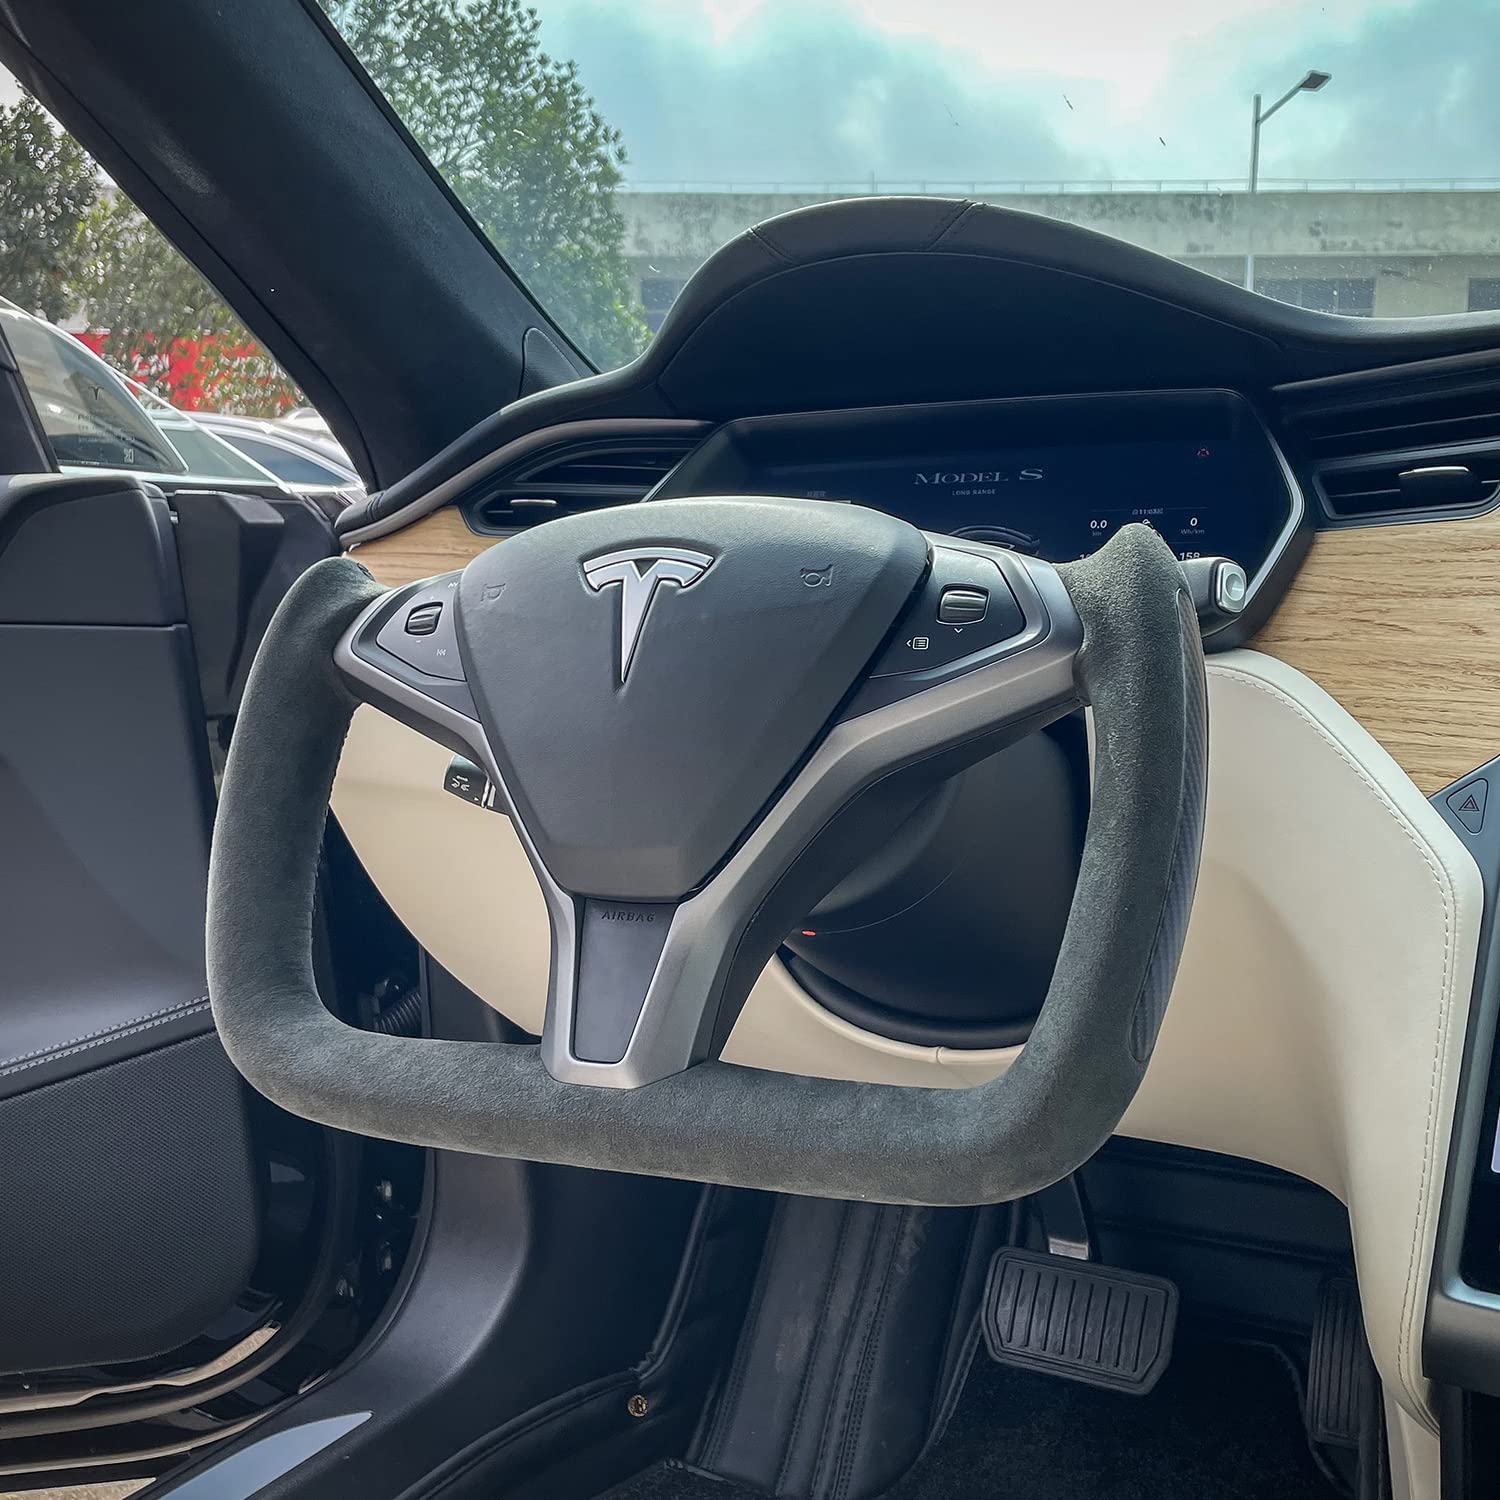 Tesla Cuscino in Alcantara per Model 3/Y/X/S - rosso